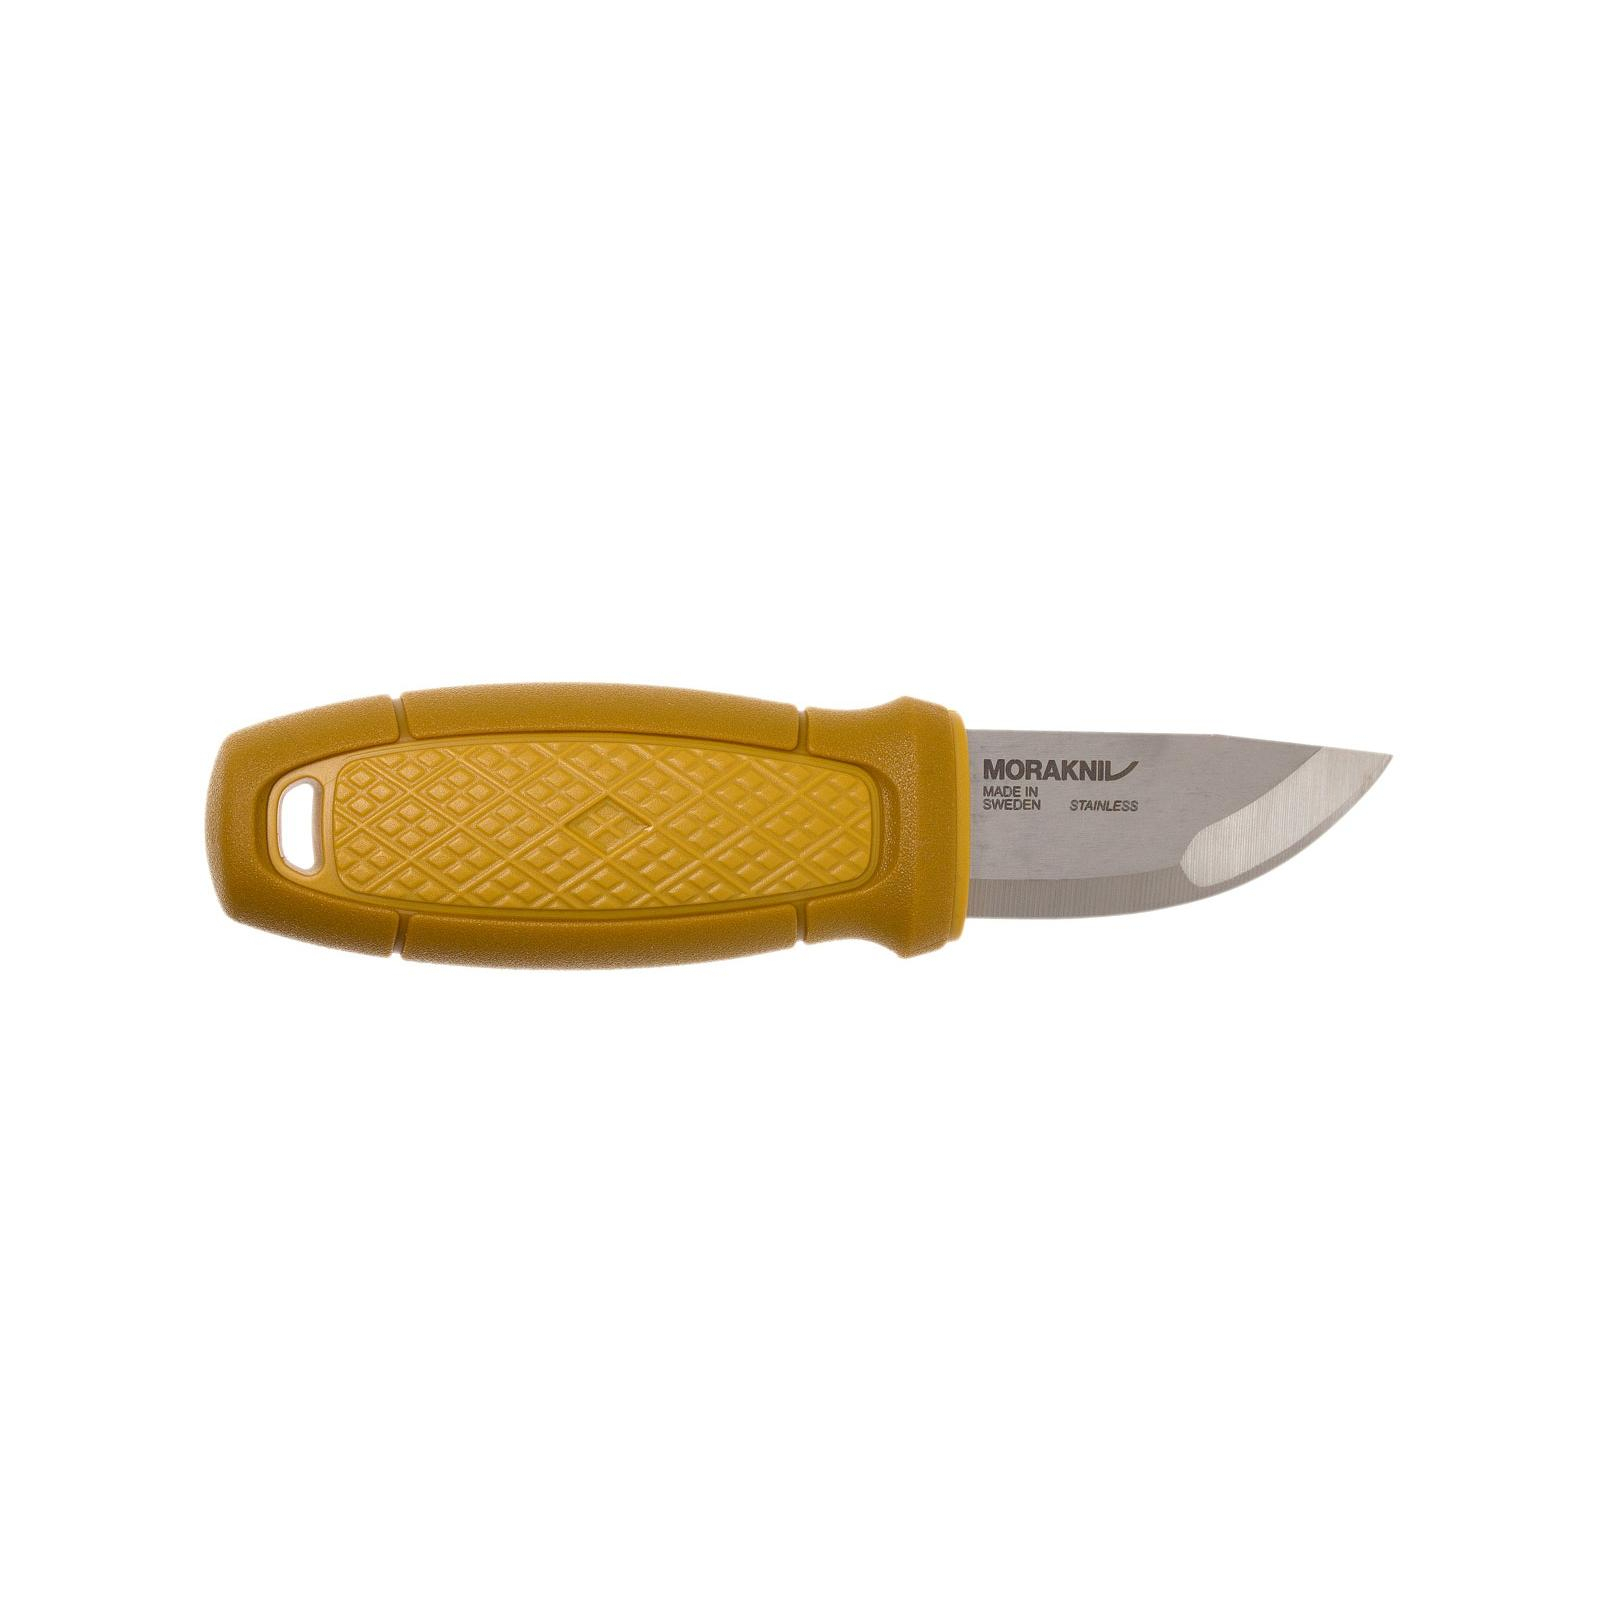 Нож Morakniv Eldris Neck Knife Red (12630)